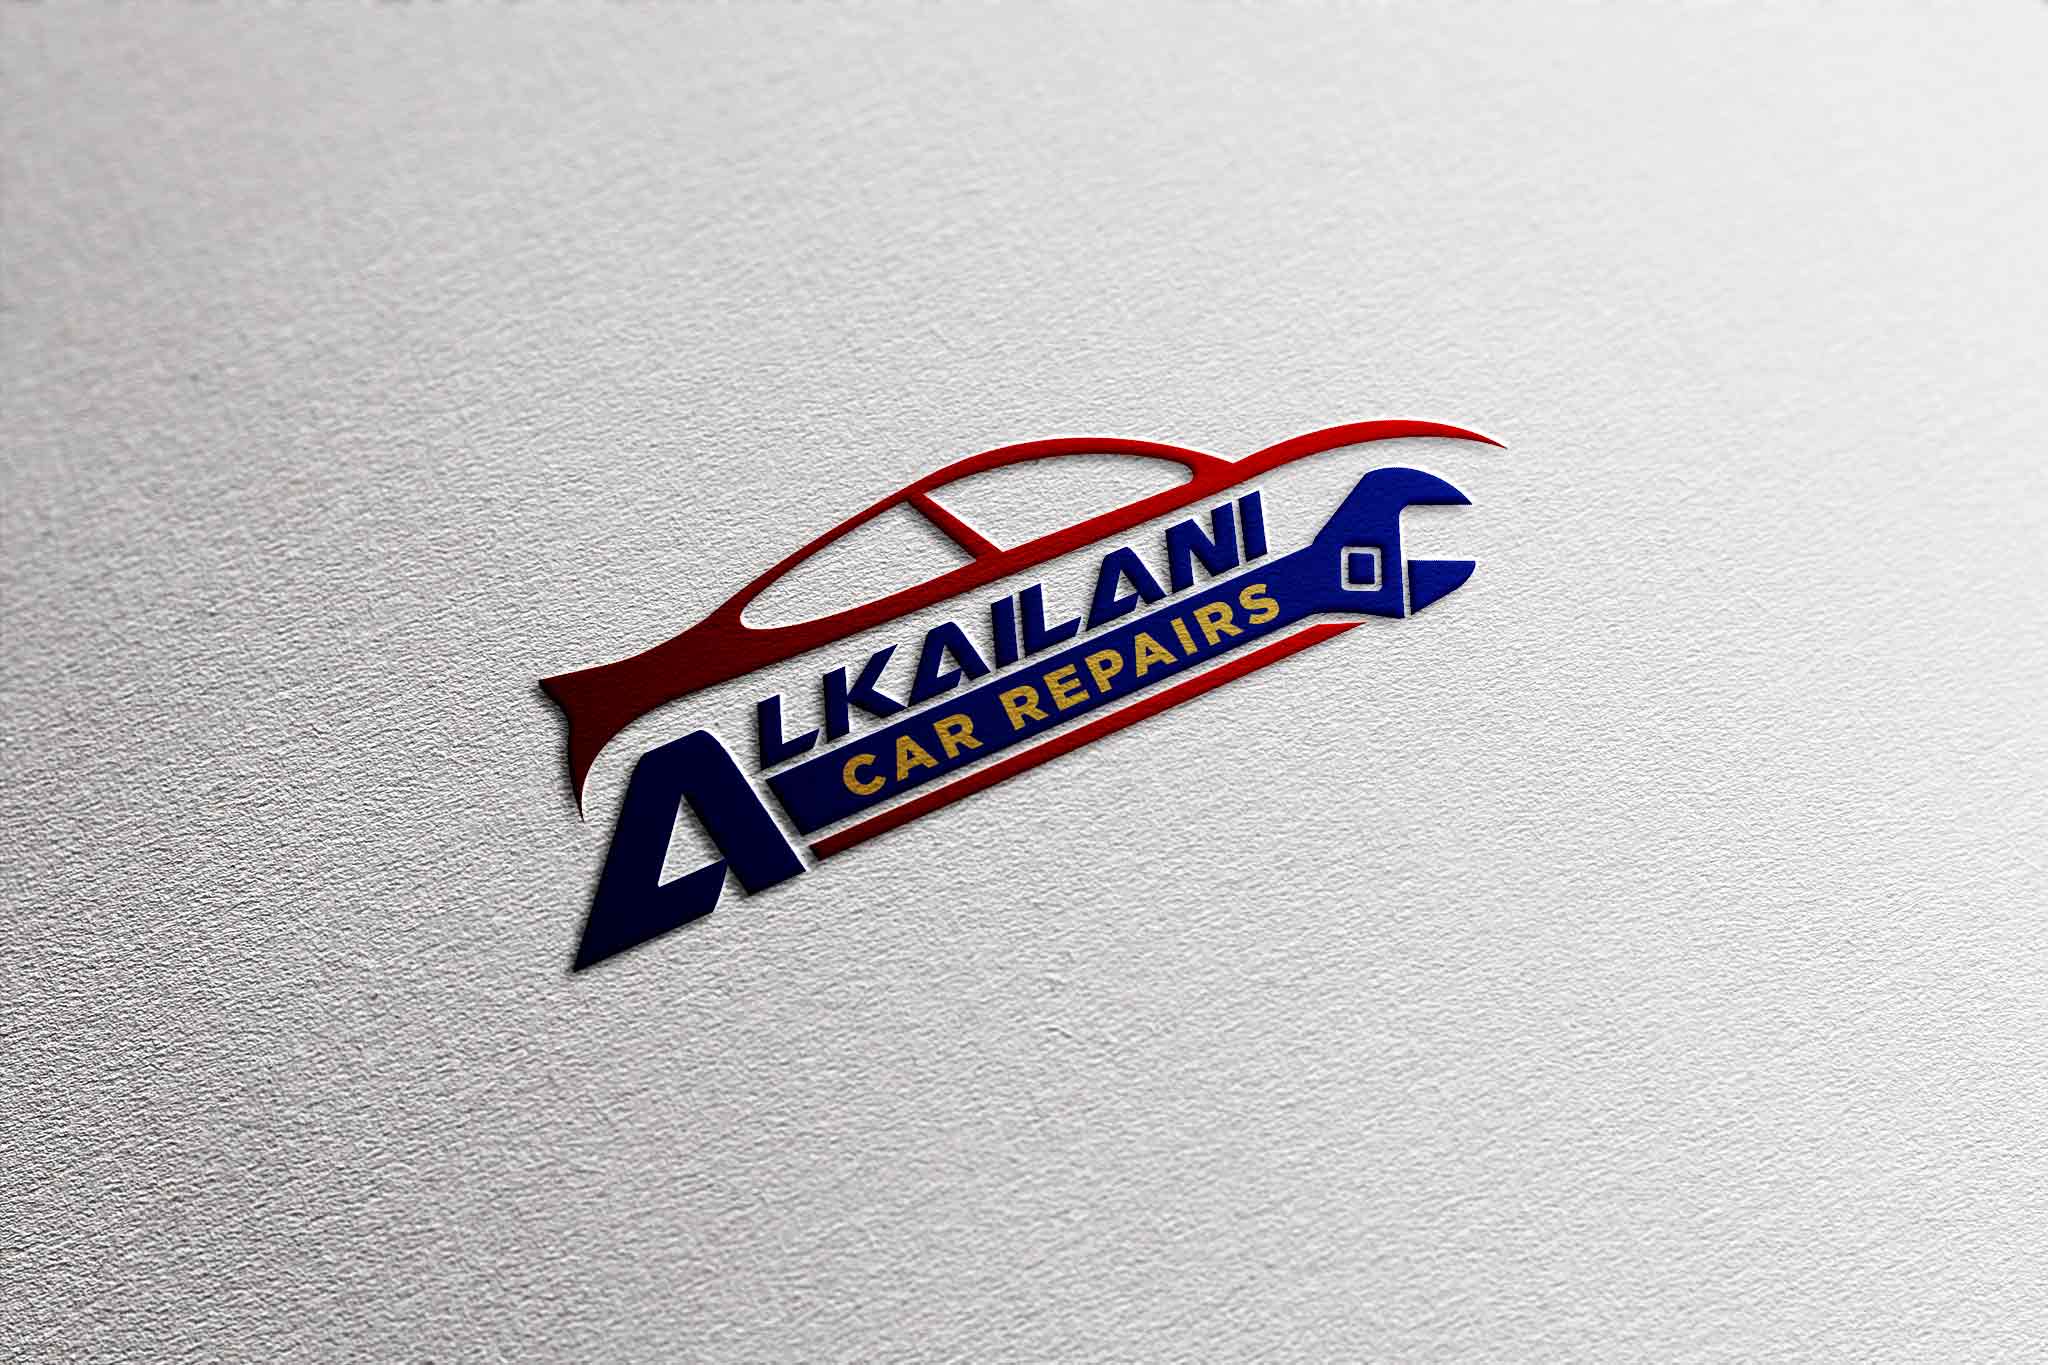 Alkailani Car Repairs Logo - Digital Delicate